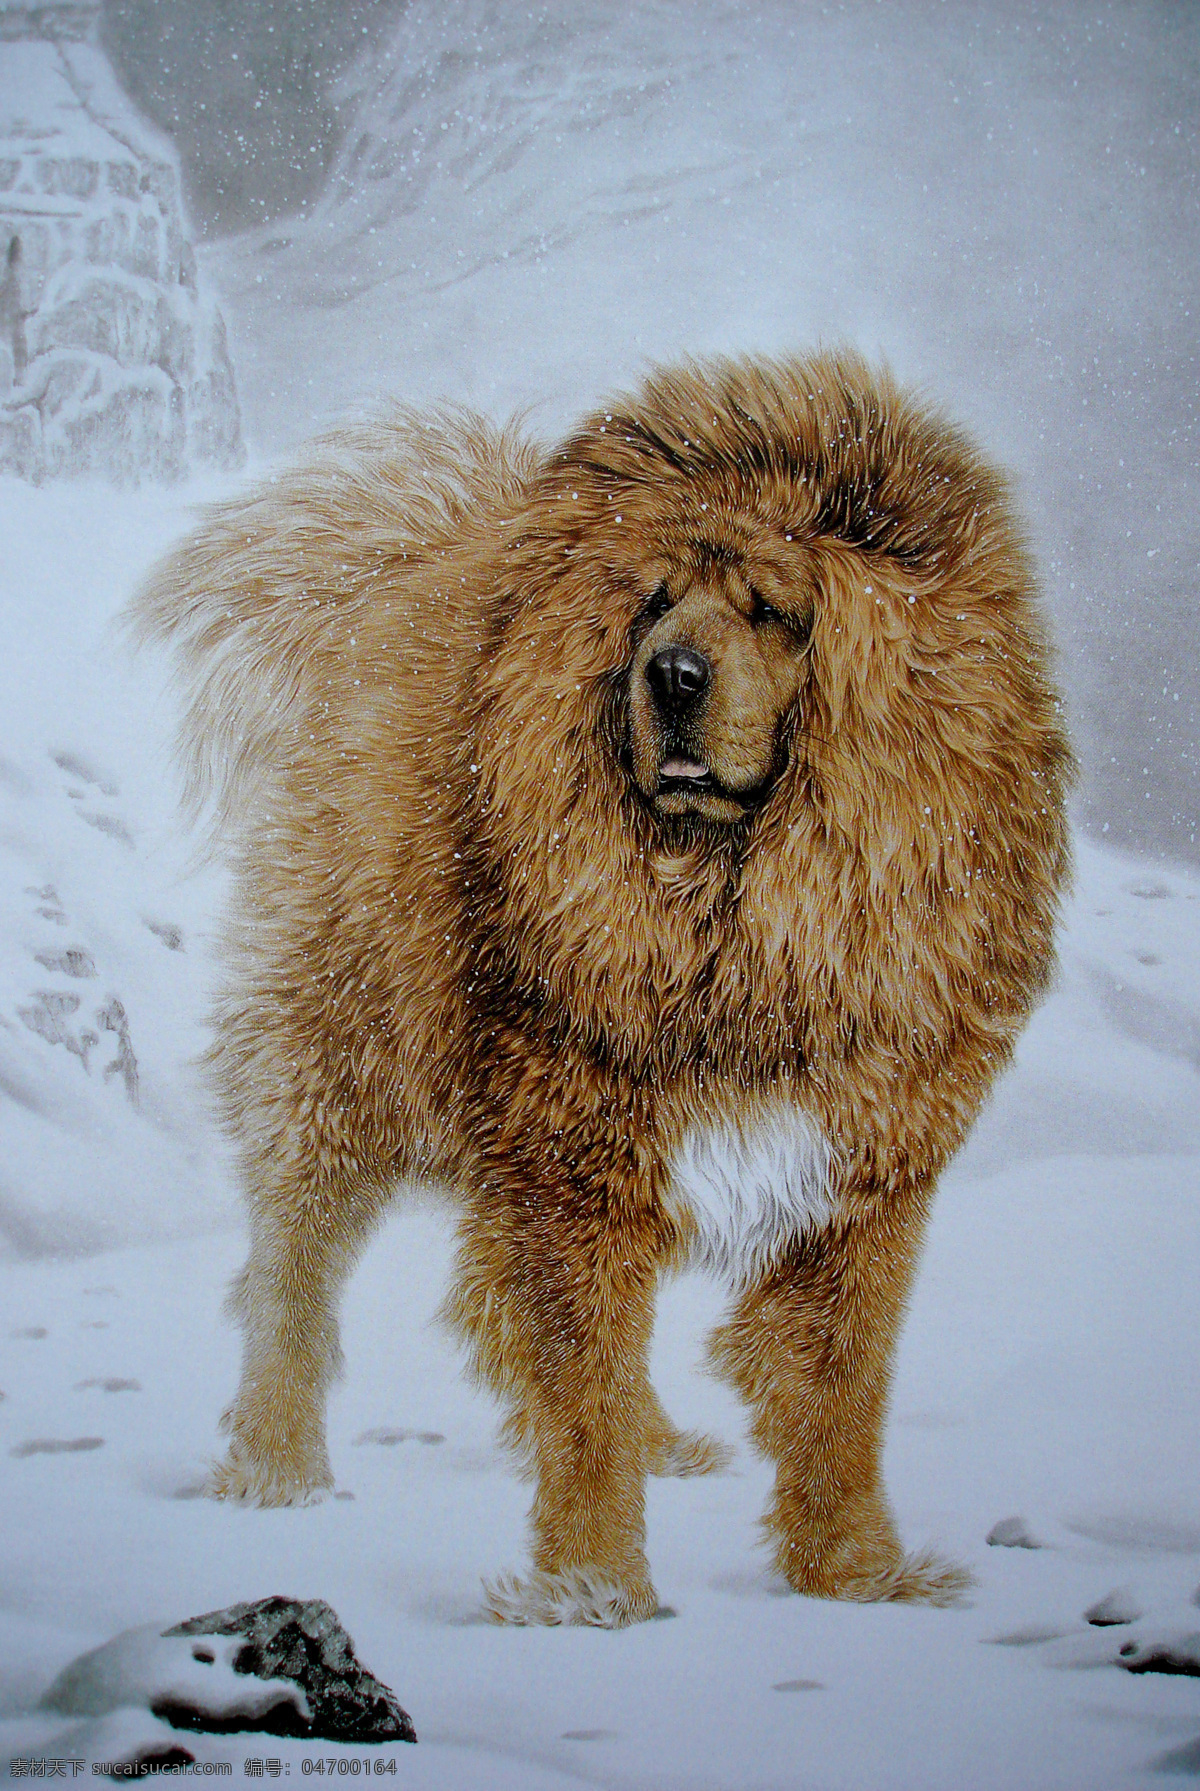 工笔画 动物世界 瑞雪藏獒 飘雪纷纷 文化艺术 美术绘画 生物世界 野生动物 设计图库 绘画书法